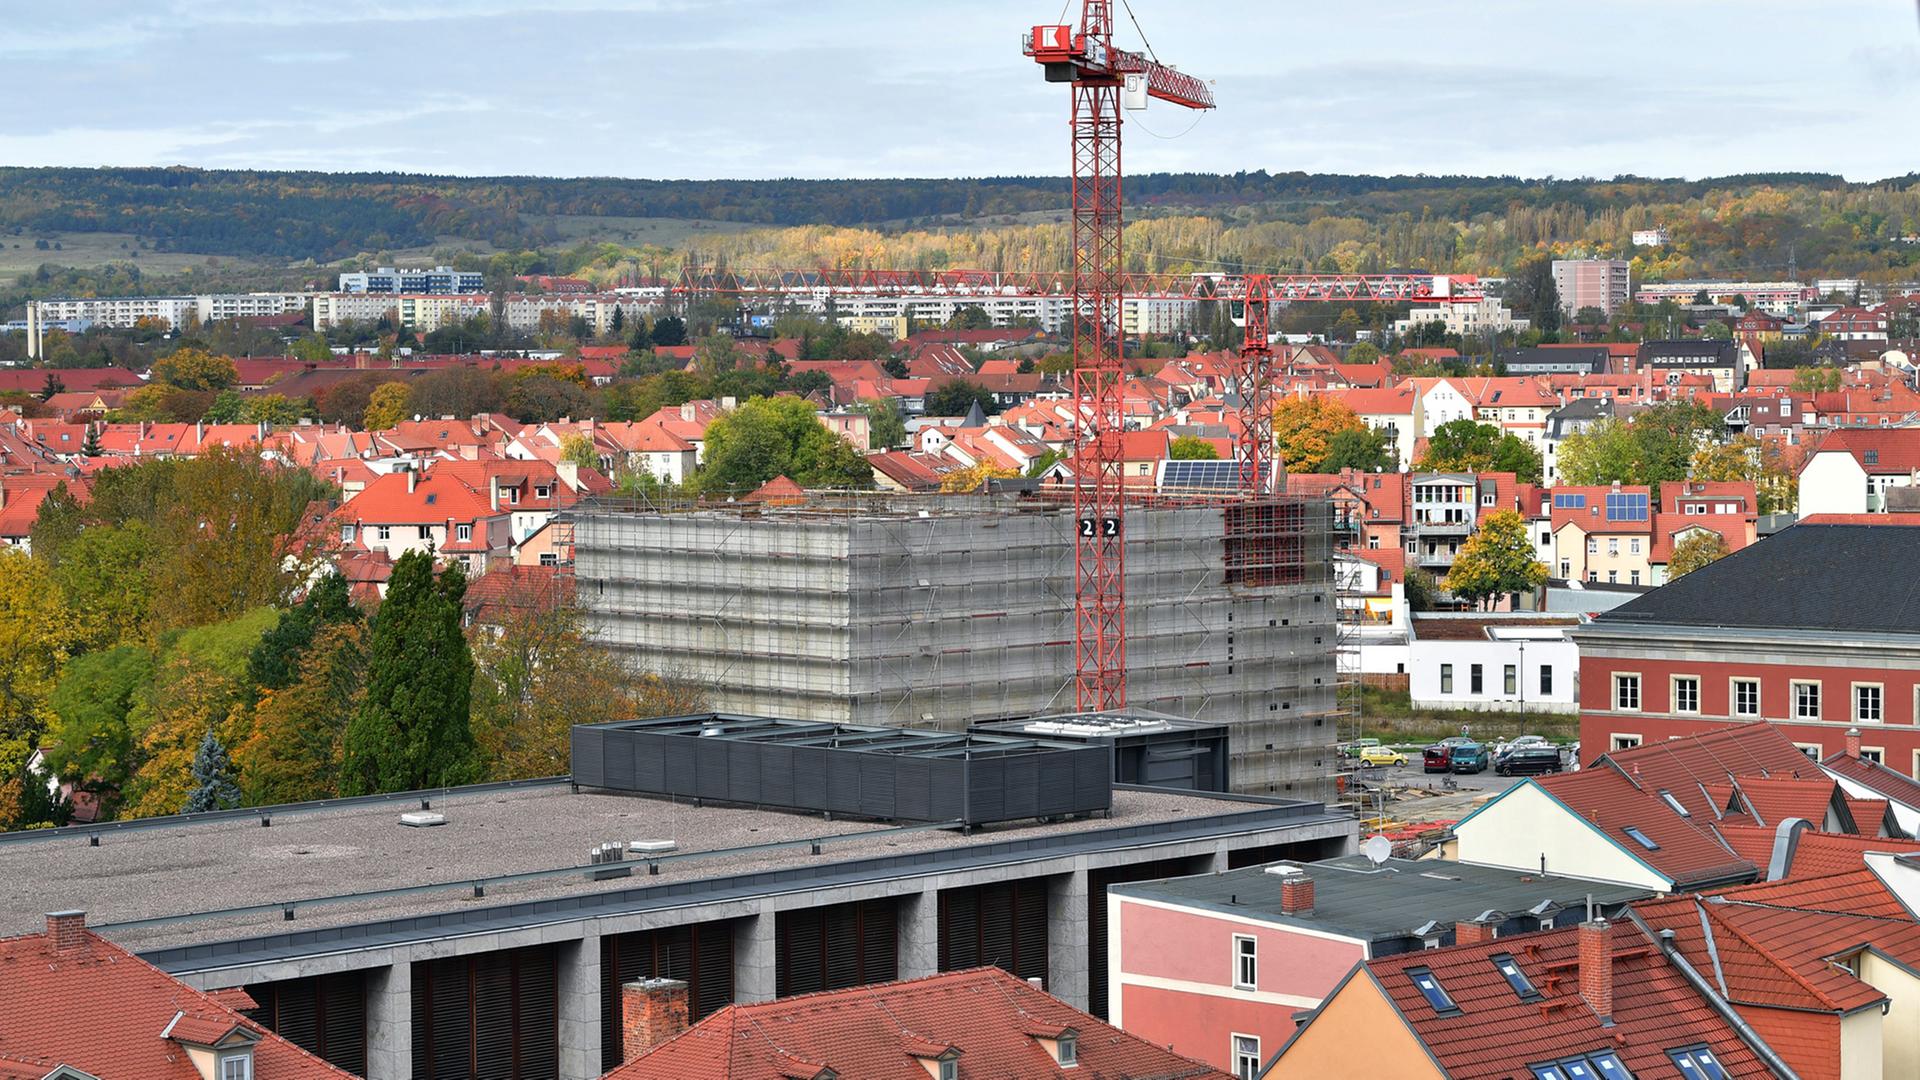 Ein Kran dreht sich in Weimar über dem Rohbau des künftigen Neuen Bauhaus-Museum. Im April 2019, zum 100. Gründungstag der weltweit bedeutenden Design- und Architekturschule, soll der Neubau eröffnet werden.